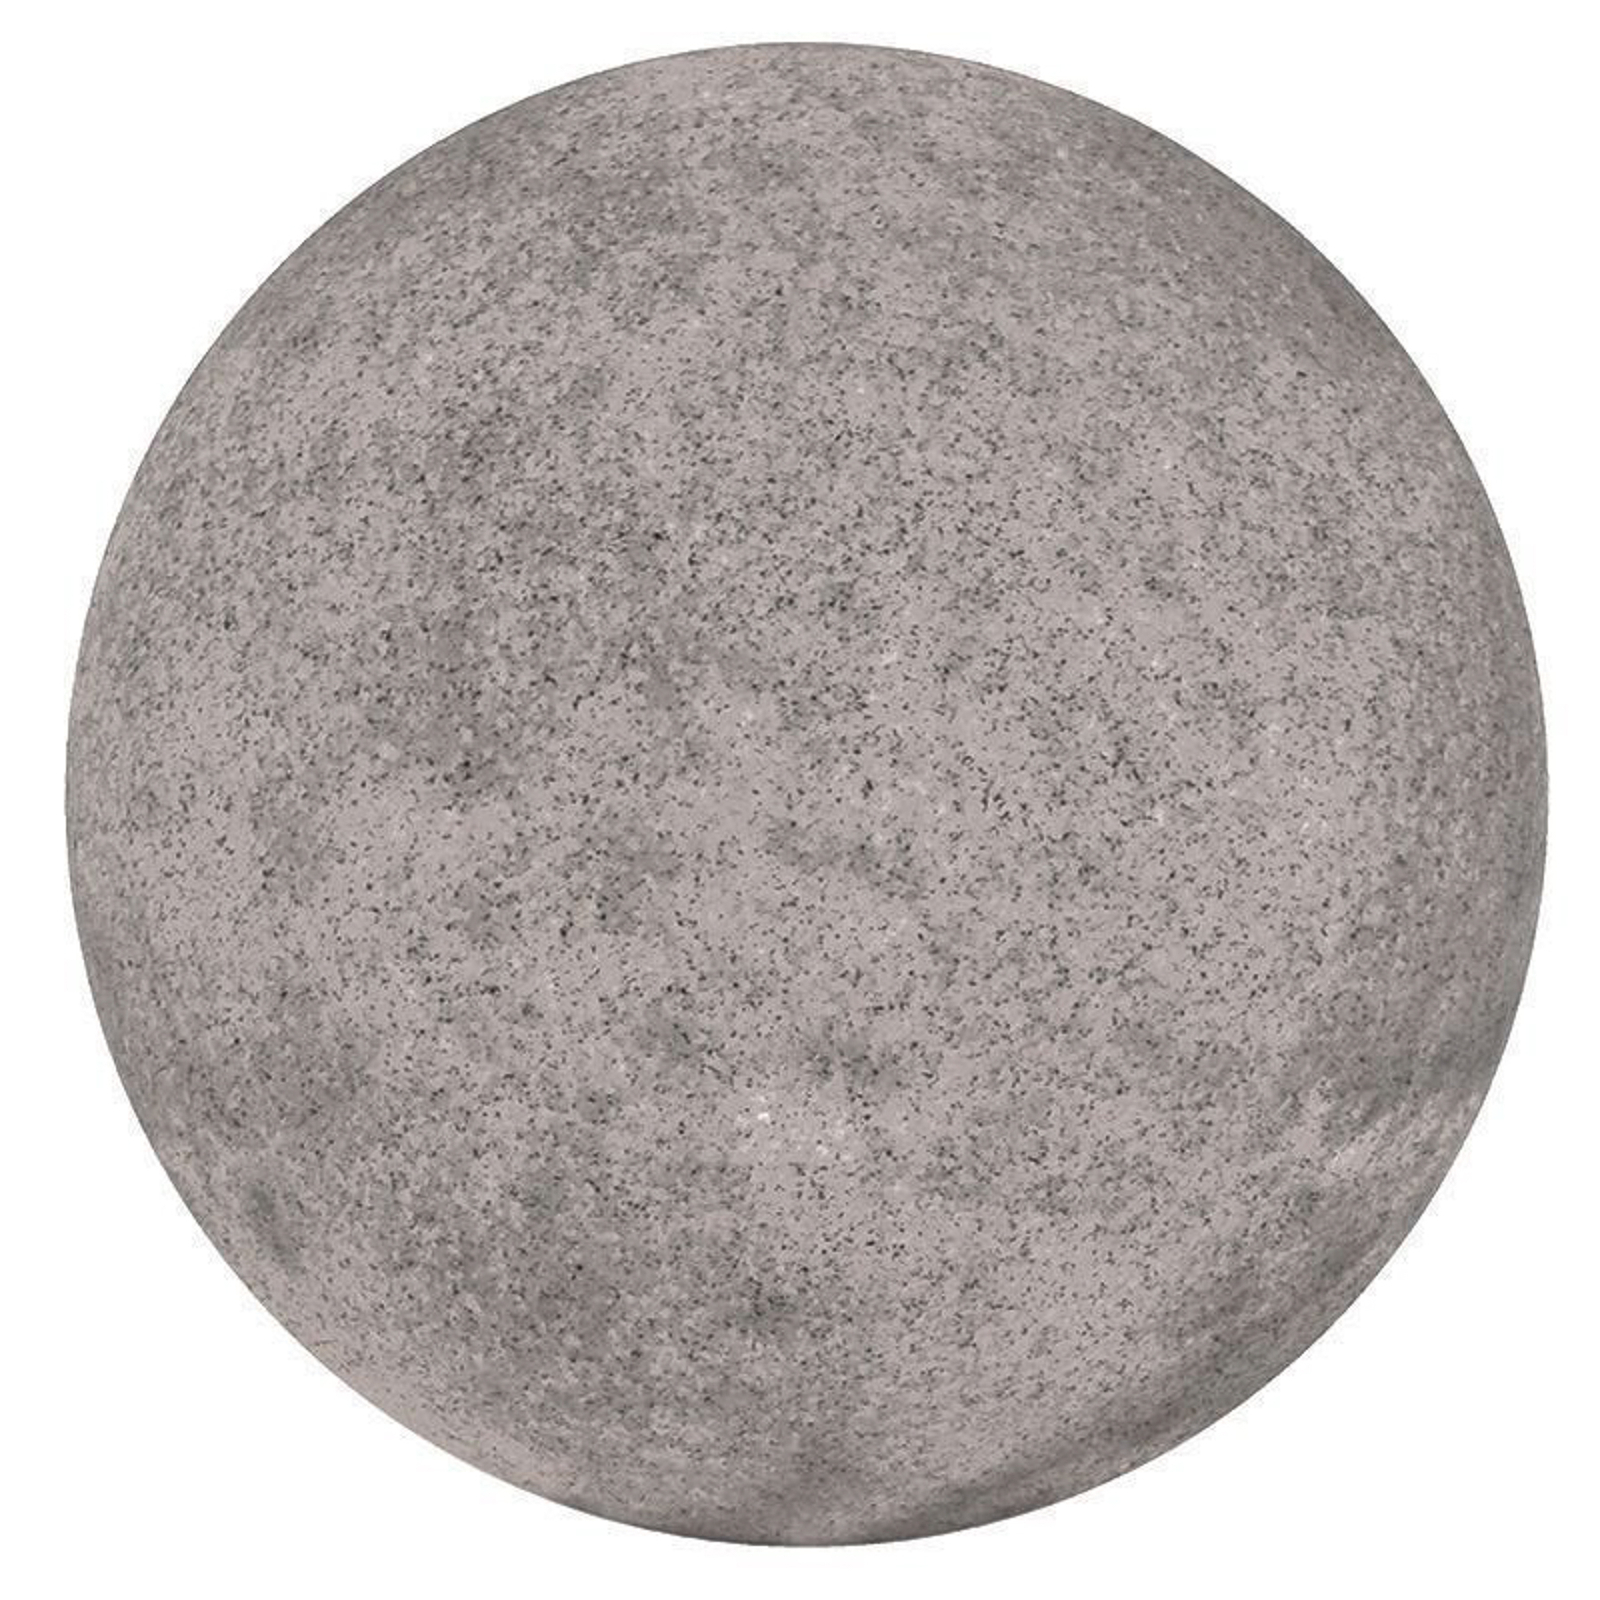 Lampada a globo per esterni con picchetto a terra, granito, Ø 56 cm